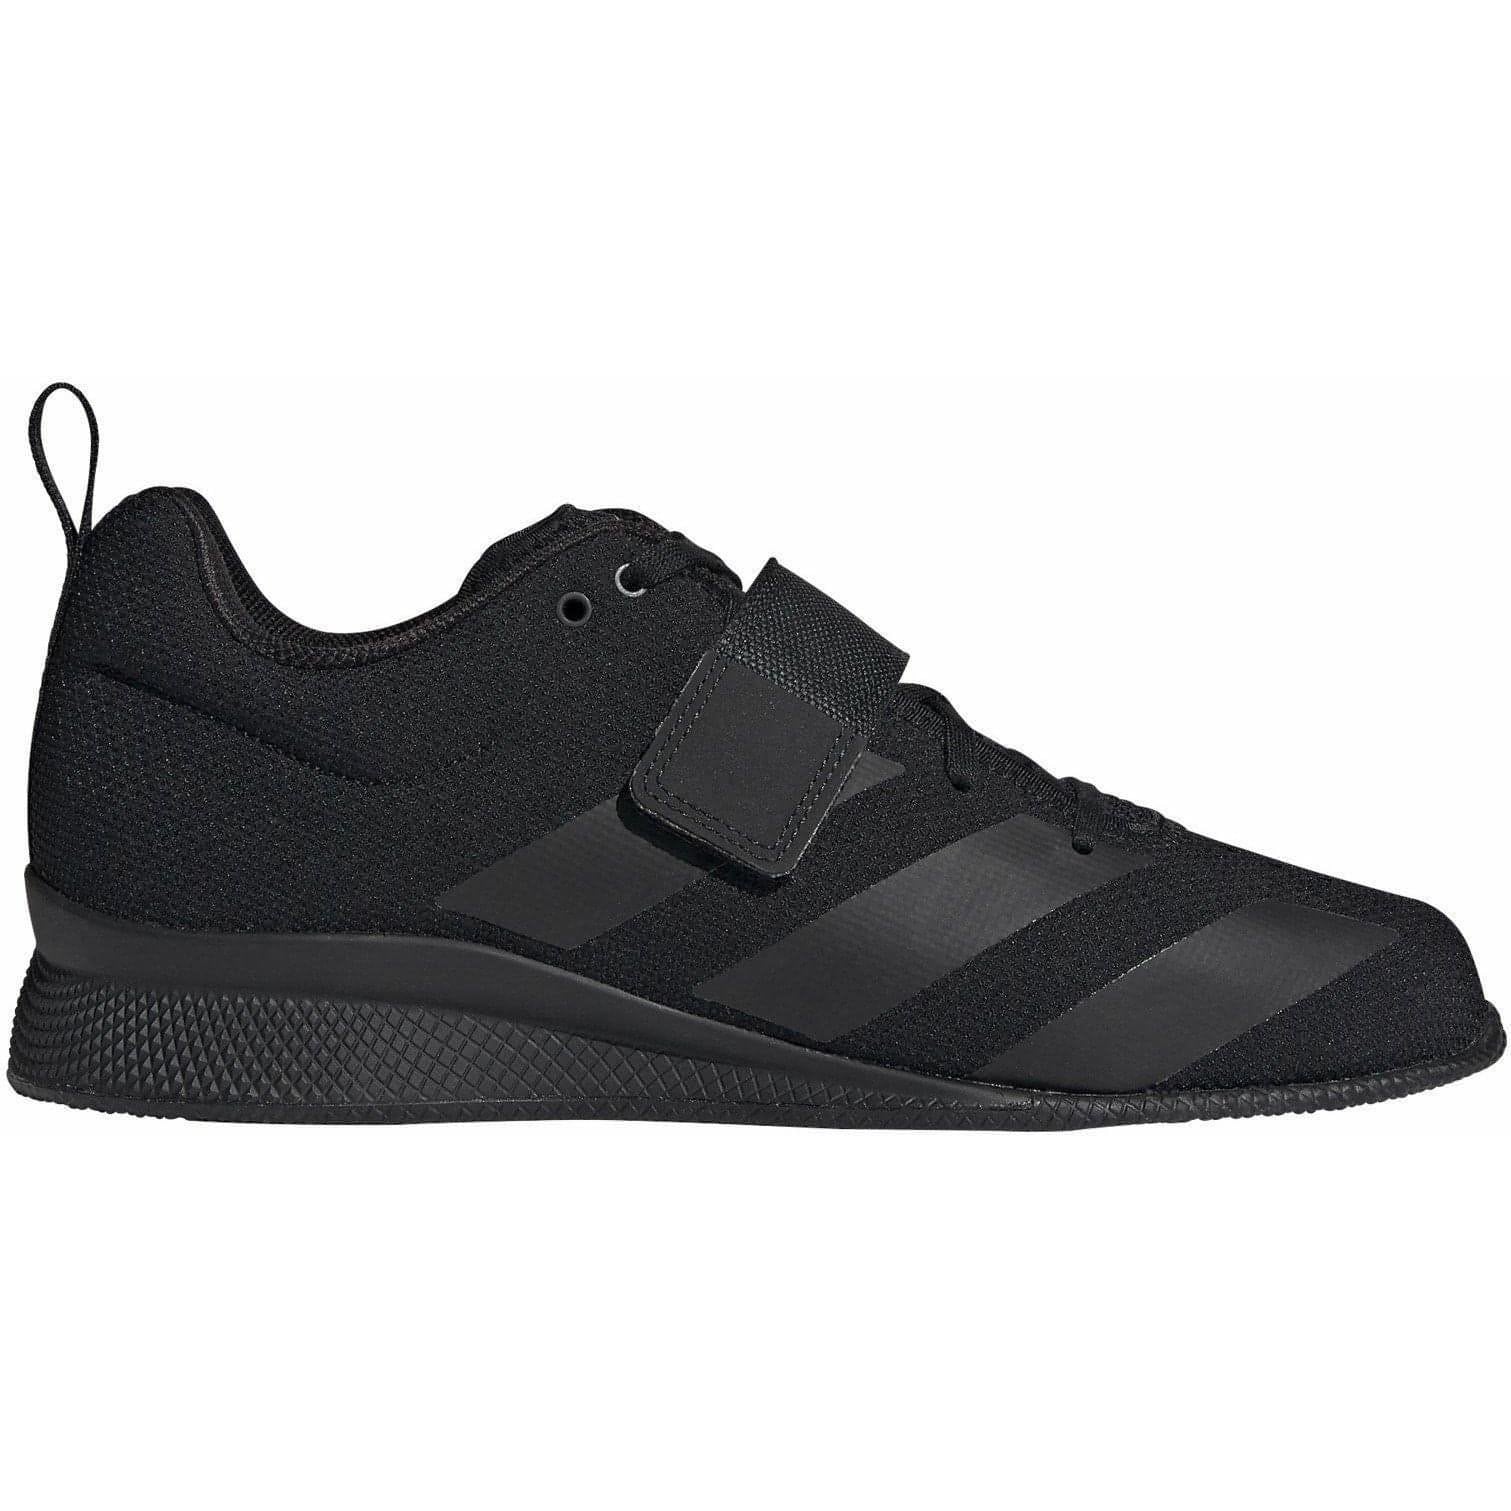 paso es suficiente Fuera de borda adidas Adipower 2 Weightlifting Shoes - Black